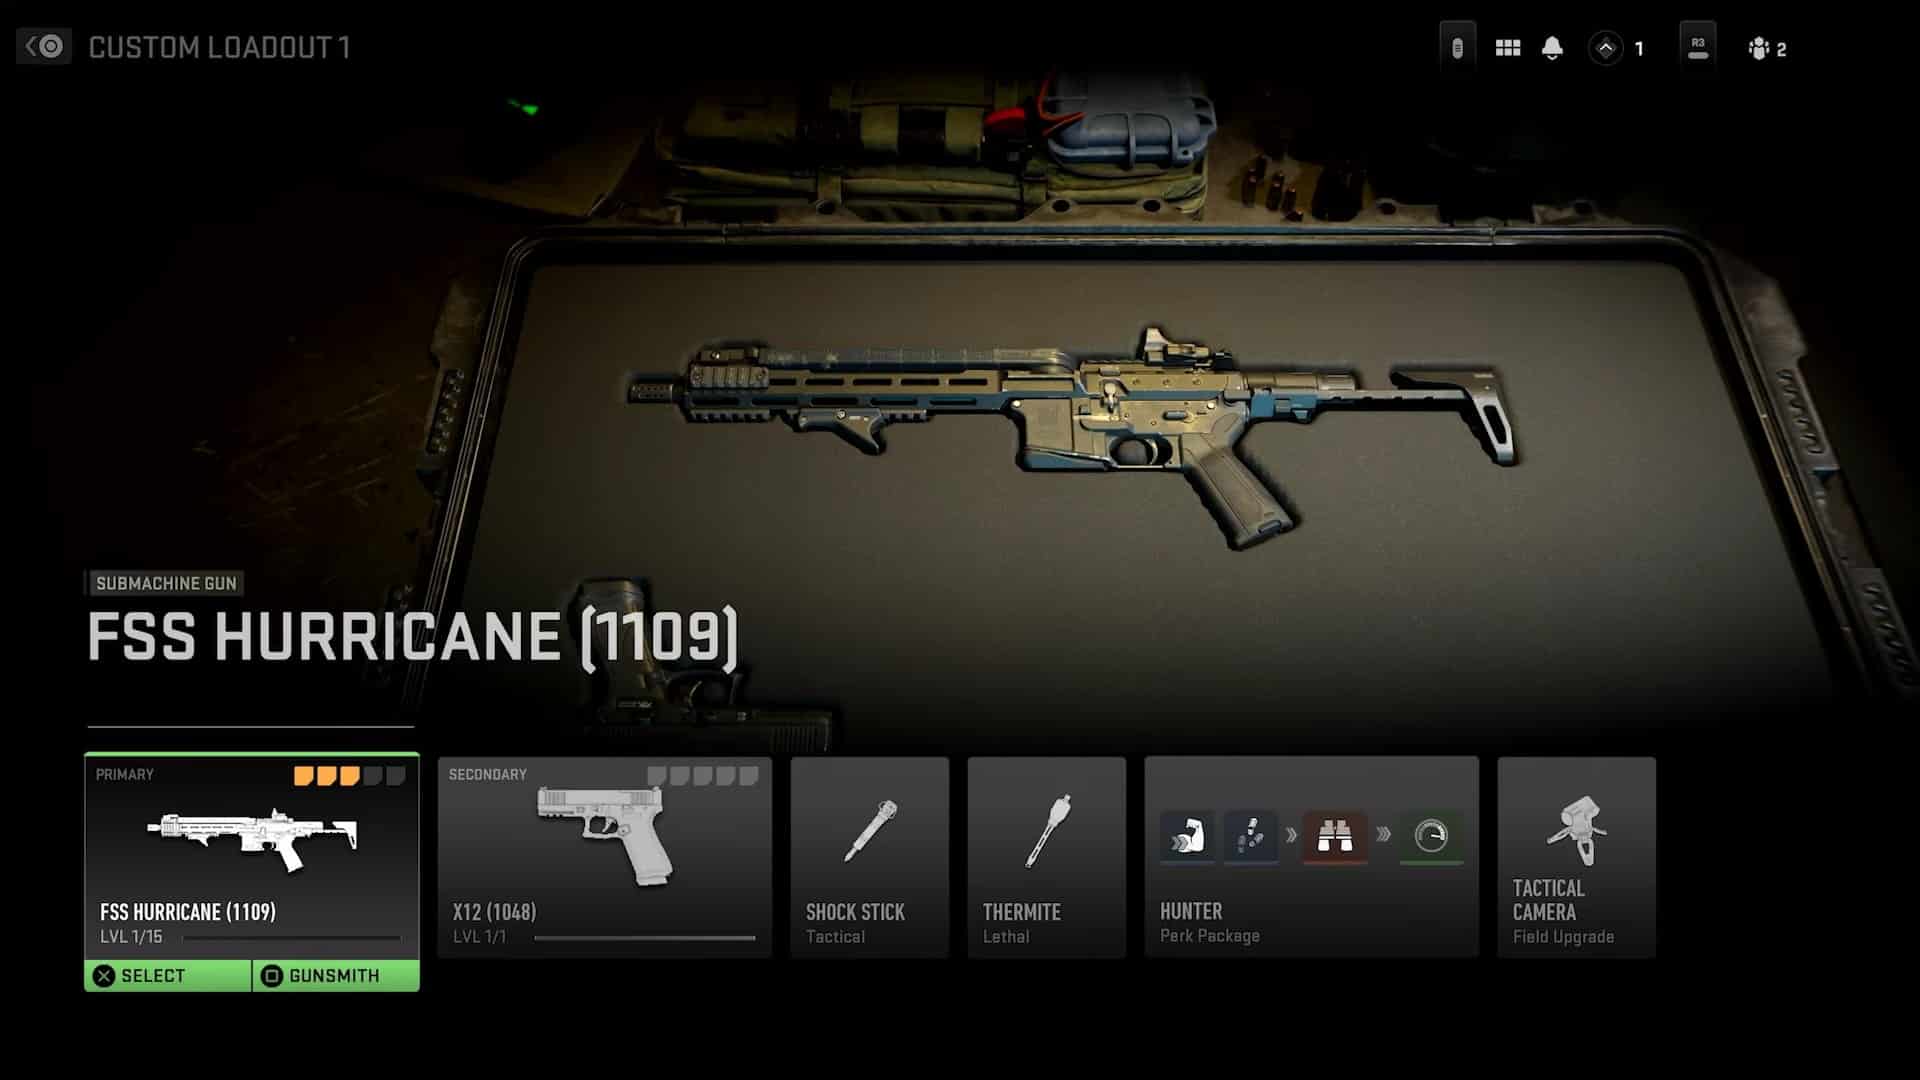 (Gunsmith 2.0 ujawnione: Tak wygląda nowe menu. Zwróć uwagę na 4 atuty i 5 slotów na dodatki na broń).